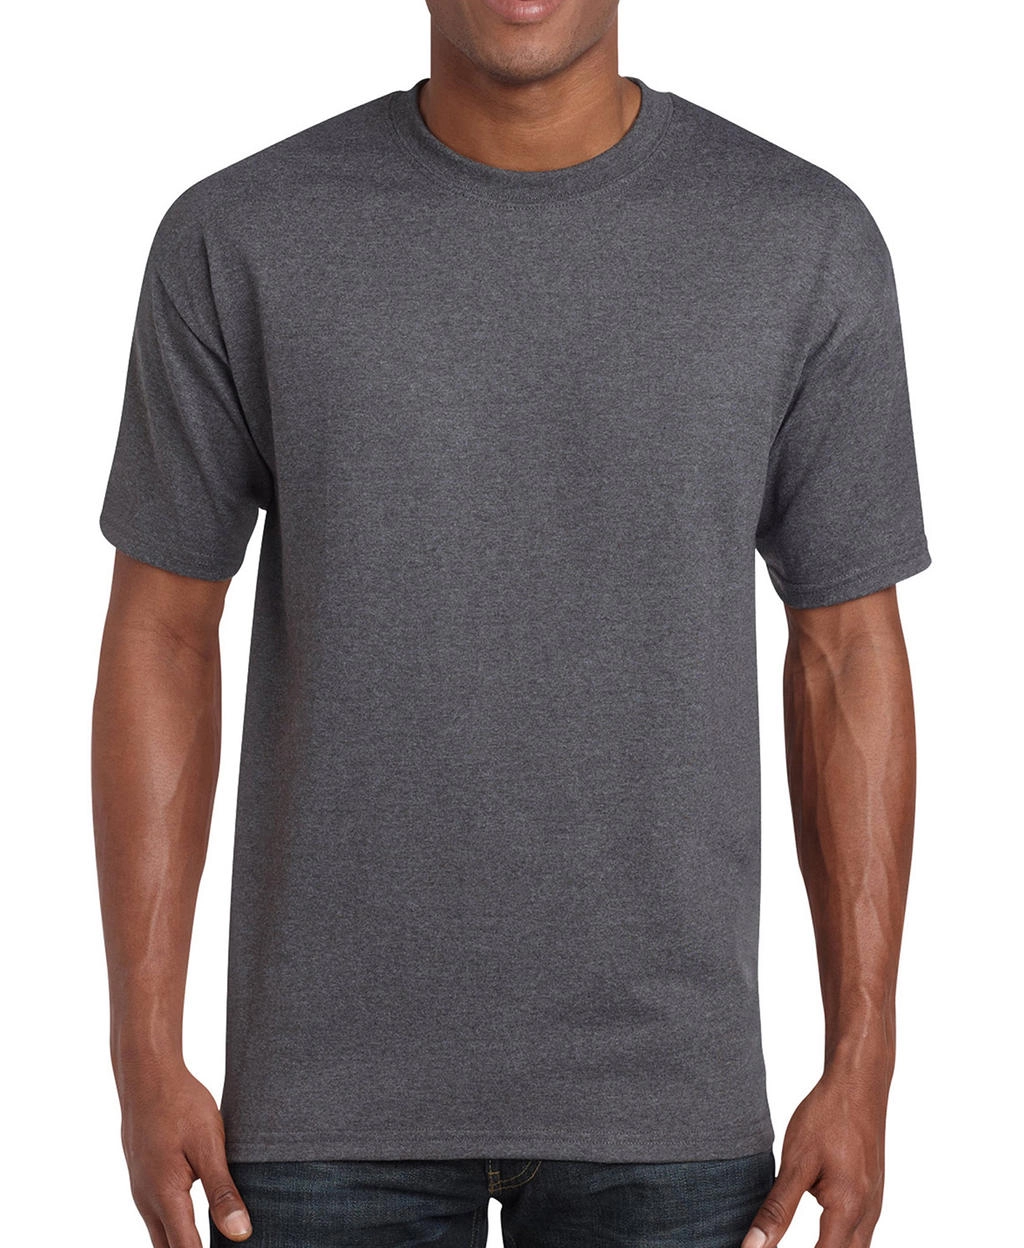 Heavy Cotton Adult T-Shirt zum Besticken und Bedrucken in der Farbe Tweed mit Ihren Logo, Schriftzug oder Motiv.